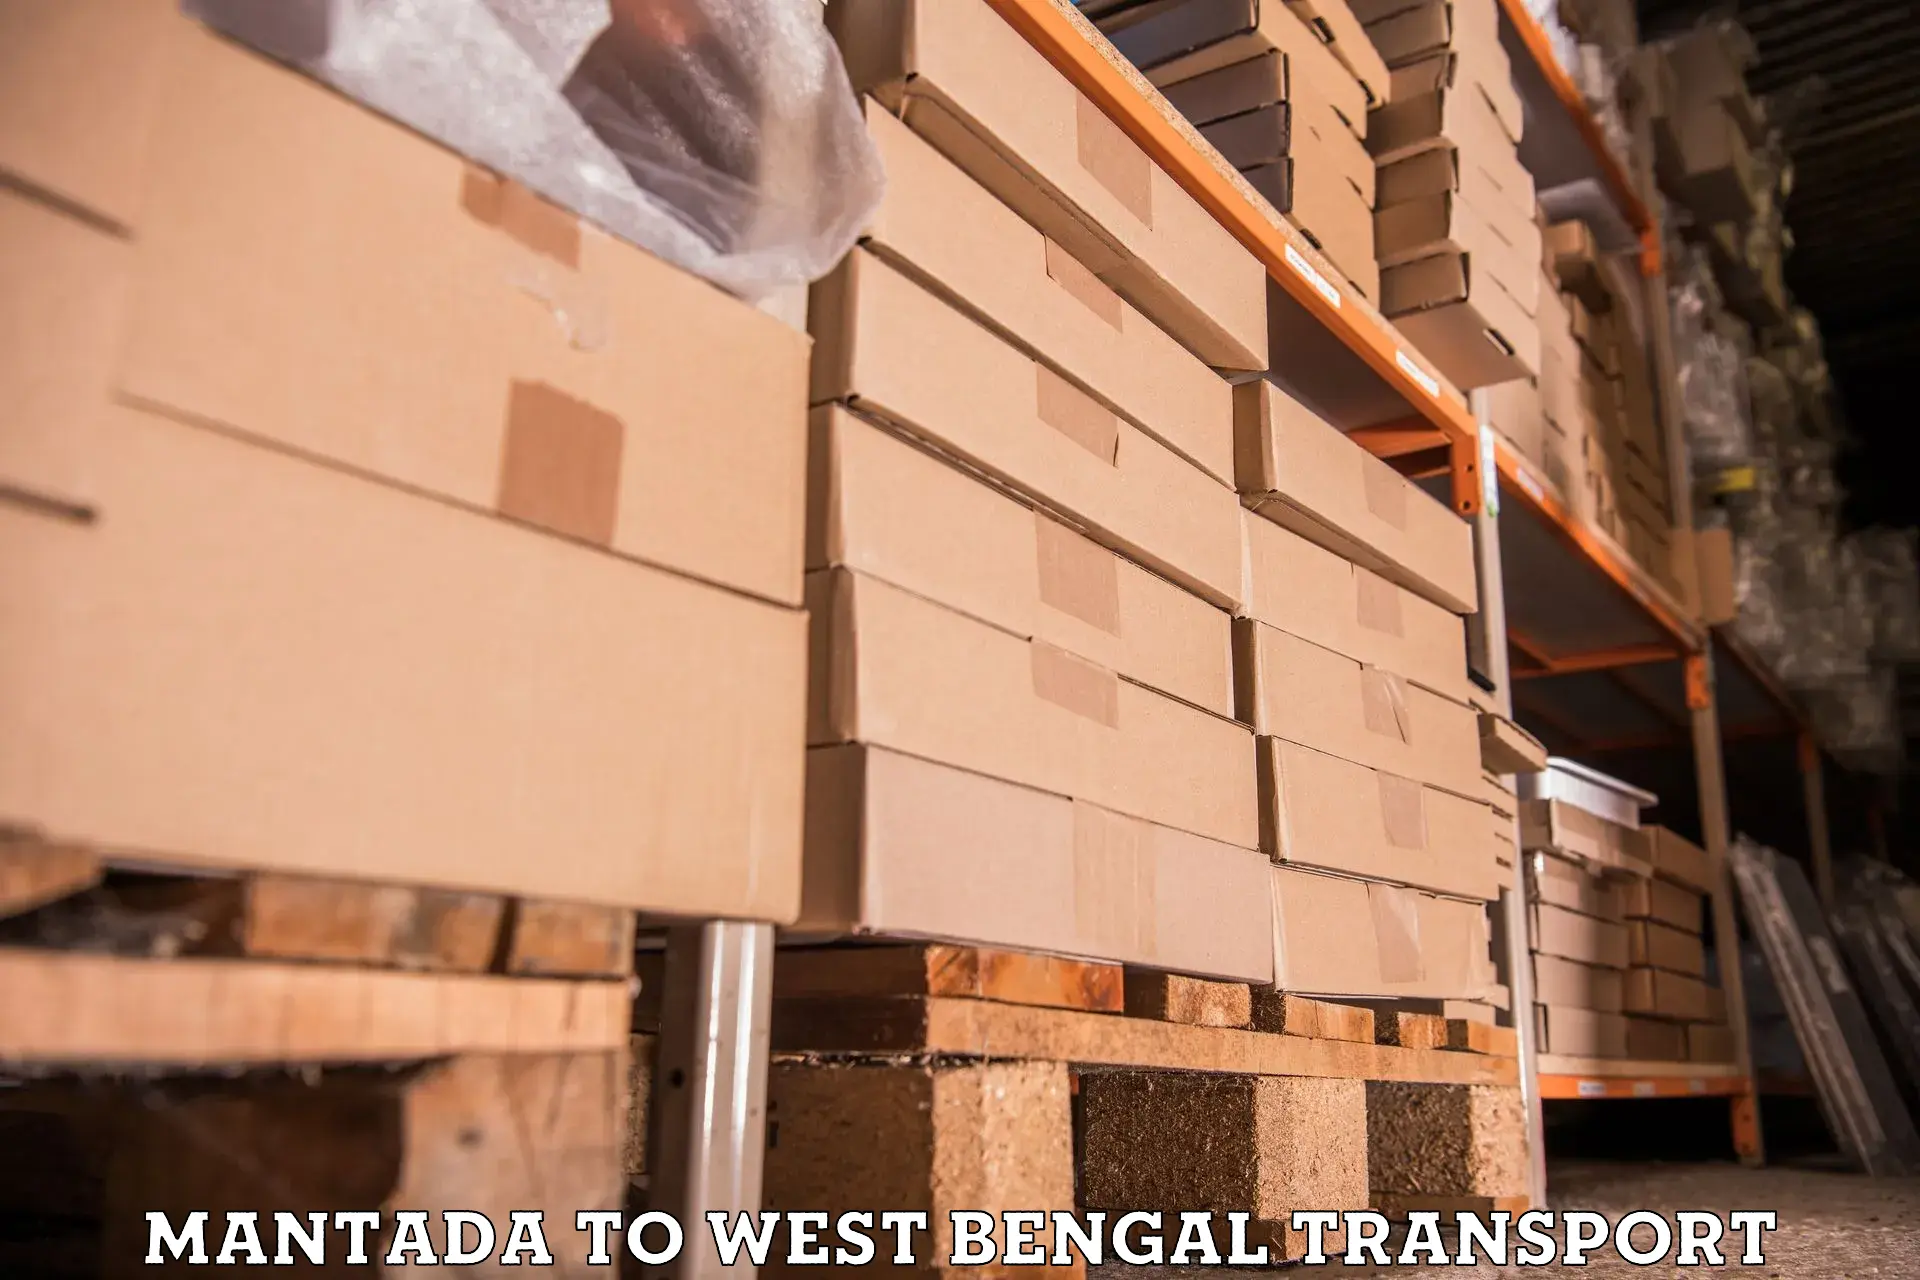 Lorry transport service Mantada to Palasi